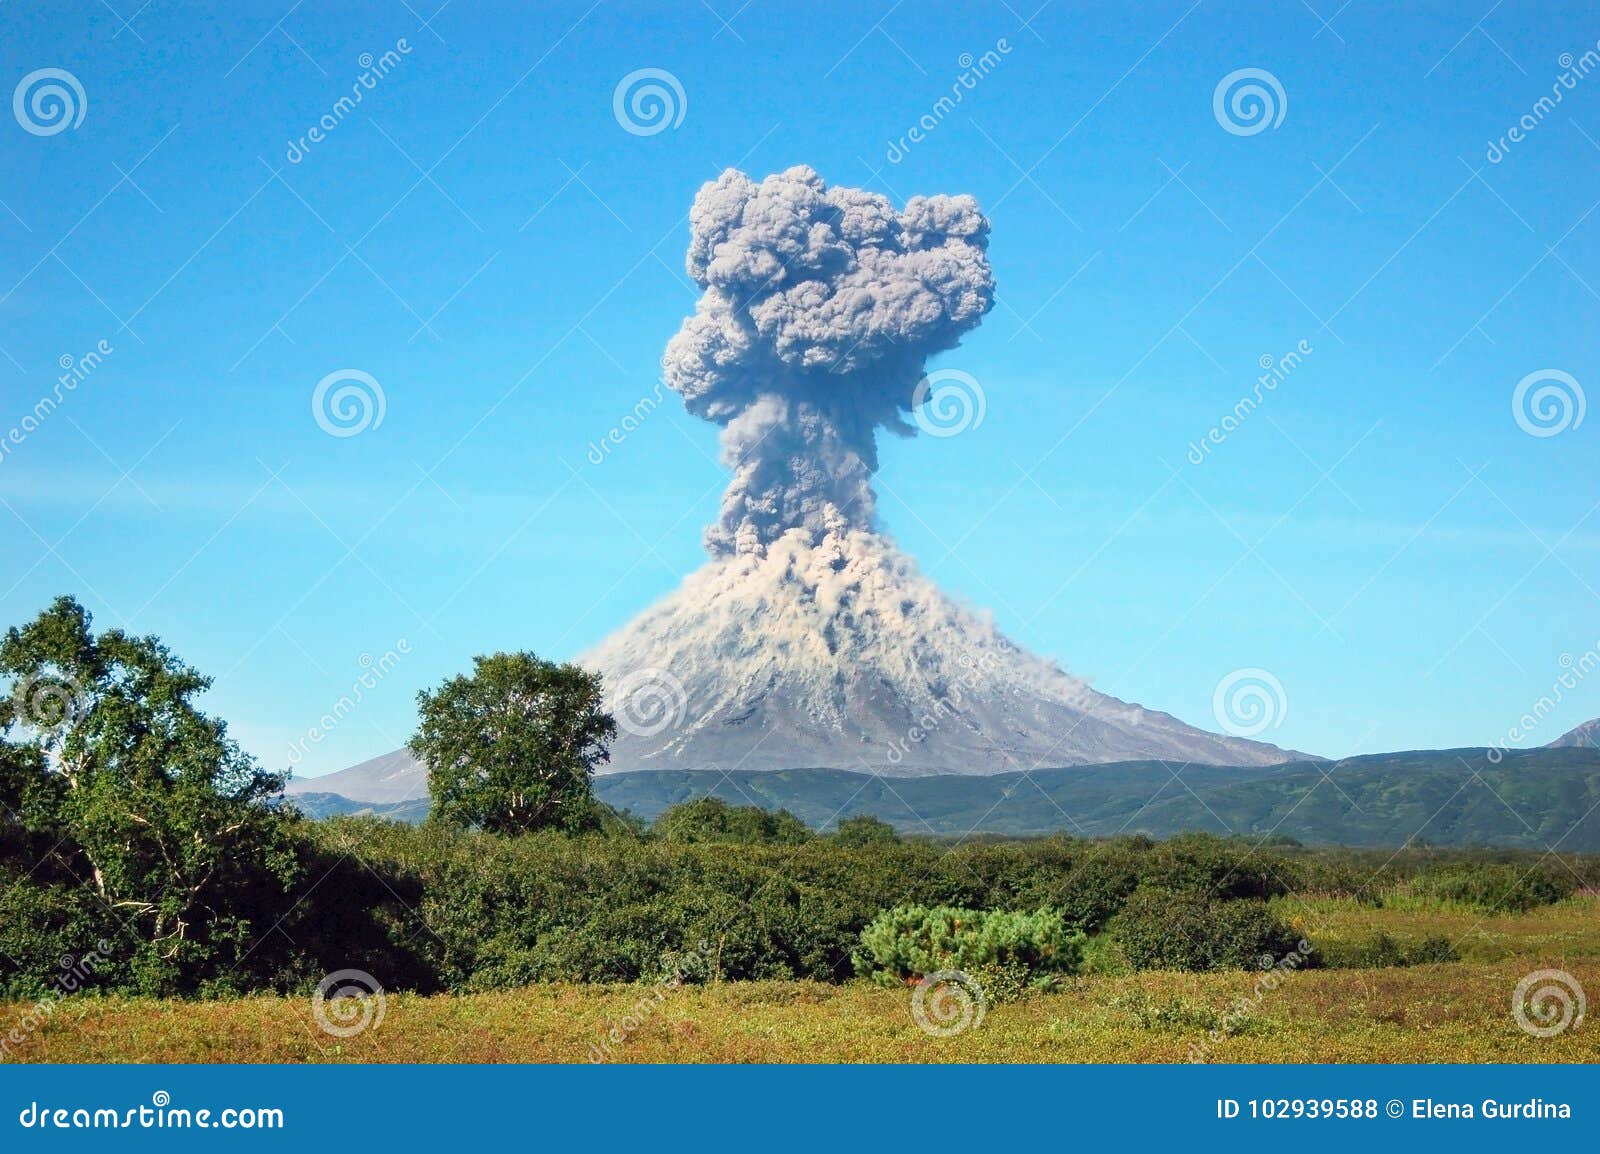 karimskiy volcano eruption in kamchatka